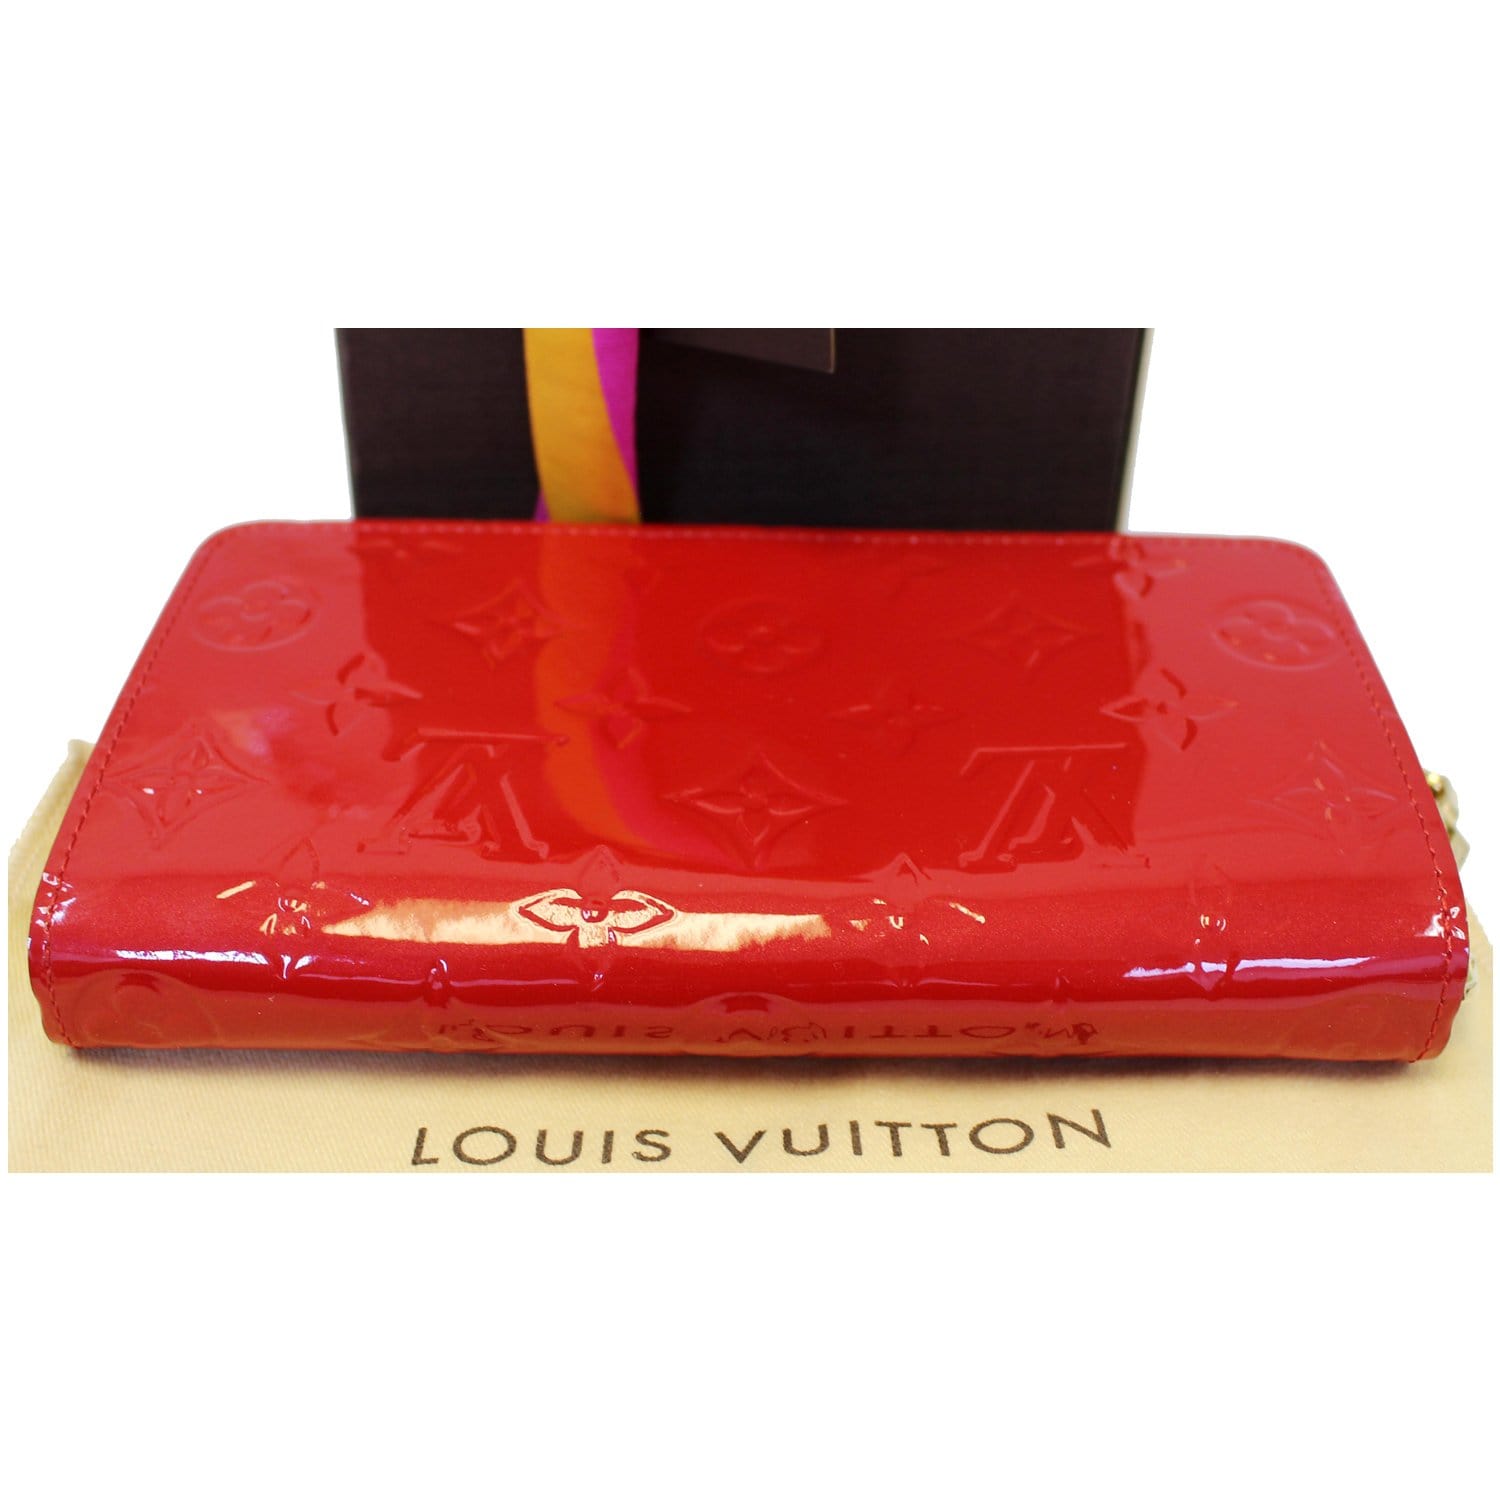 Authentic LOUIS VUITTON Portefeuille Sarah Long Wallet Red Vernis M93530  #f03601